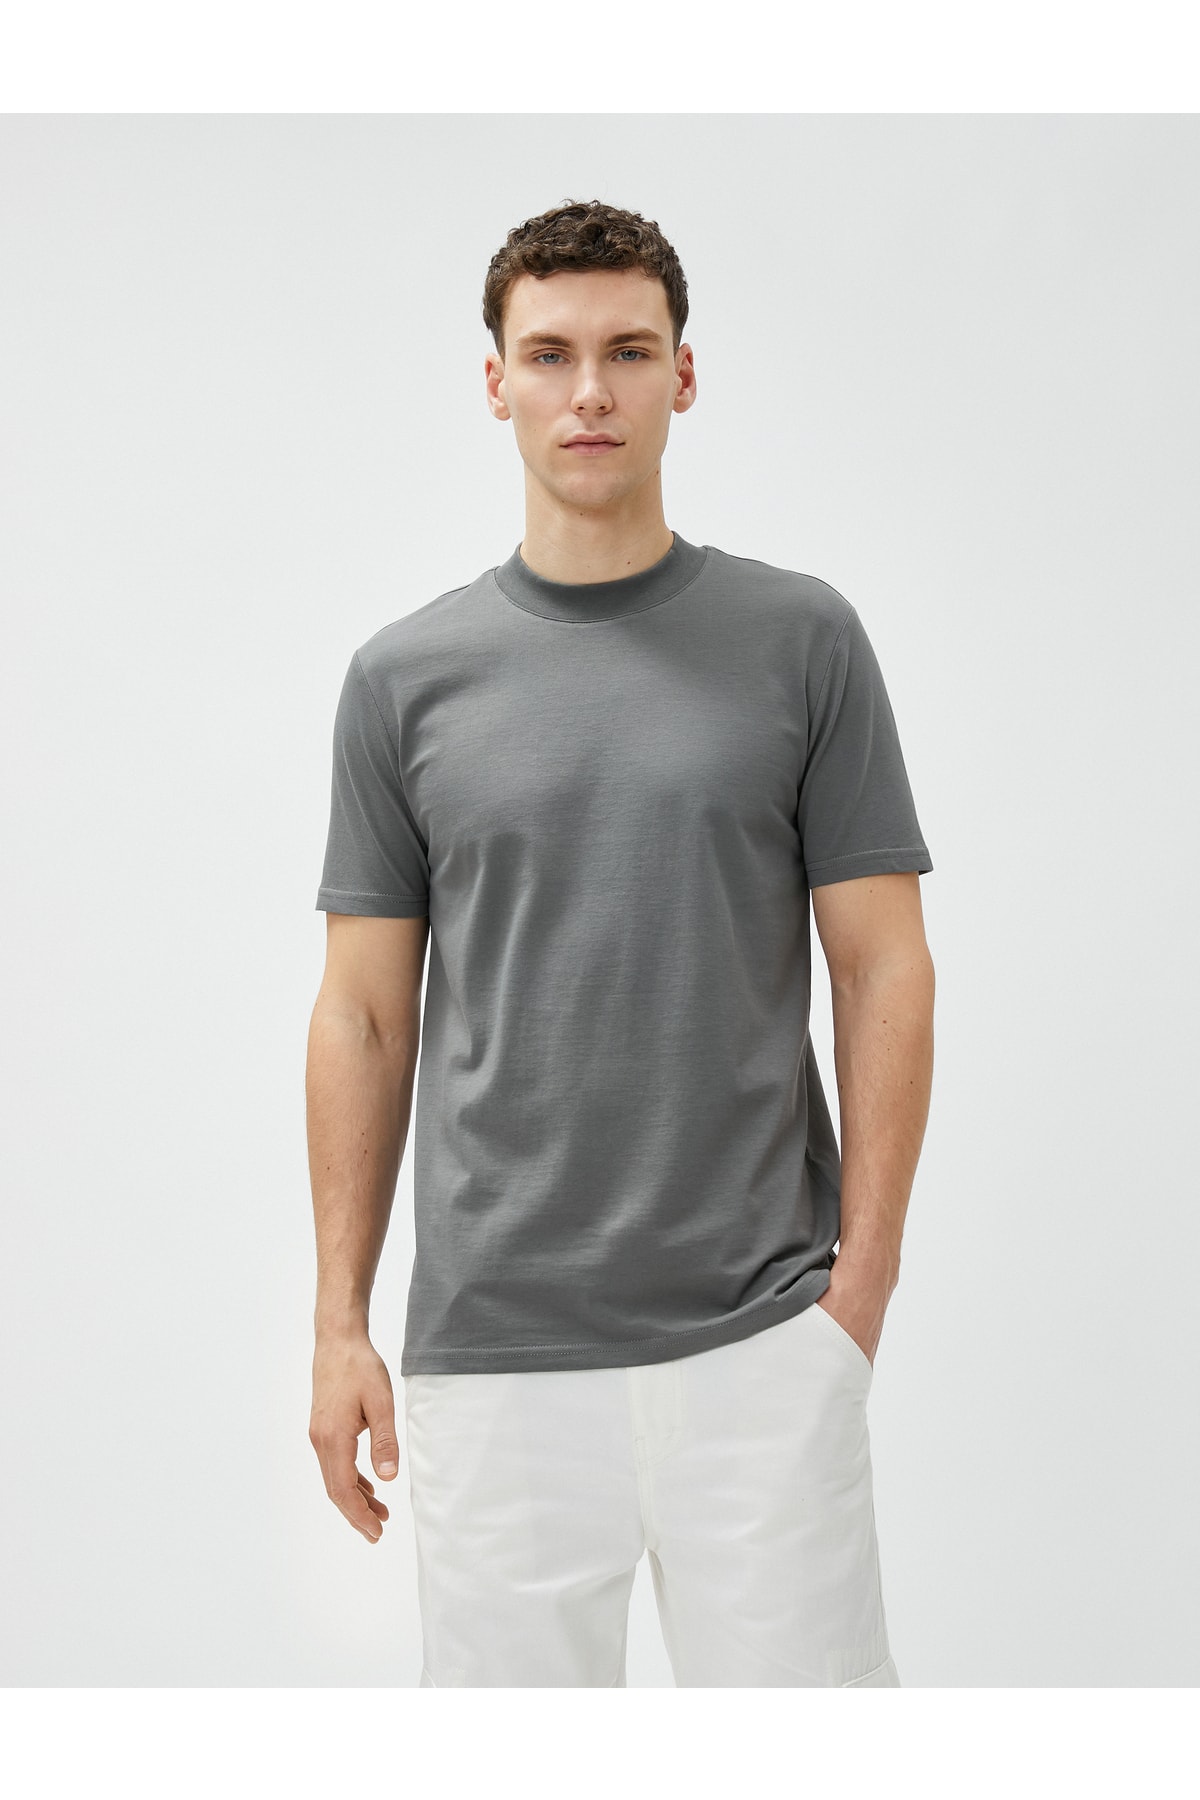 Koton Basic tričko s výstrihom posádky Slim Fit bavlna s krátkym rukávom